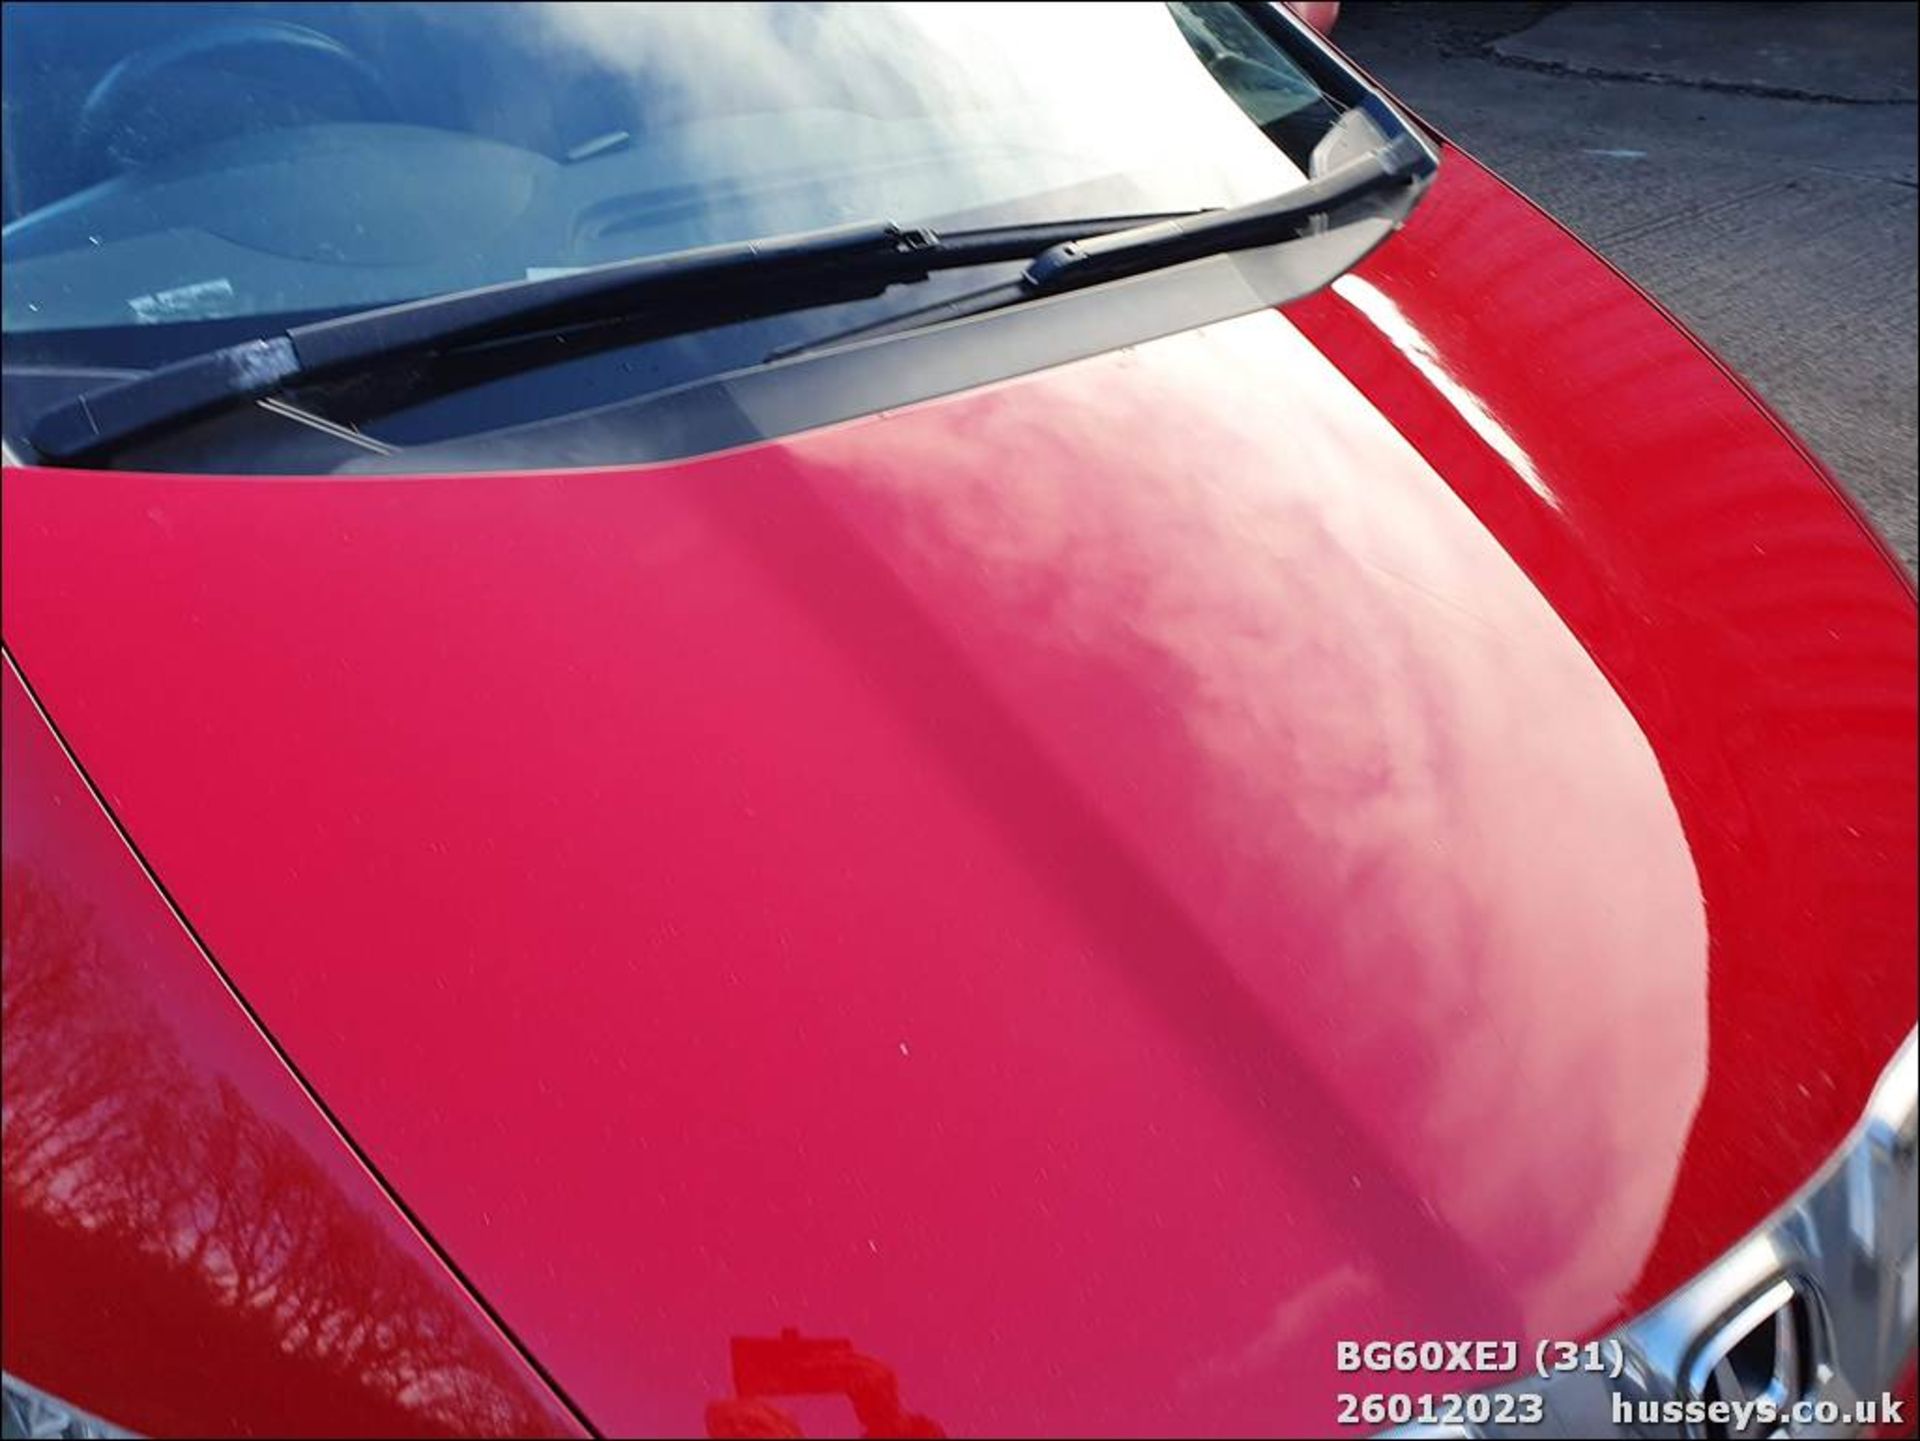 10/60 HONDA CIVIC ES I-CTDI - 2204cc 5dr Hatchback (Red, 144k) - Image 31 of 45